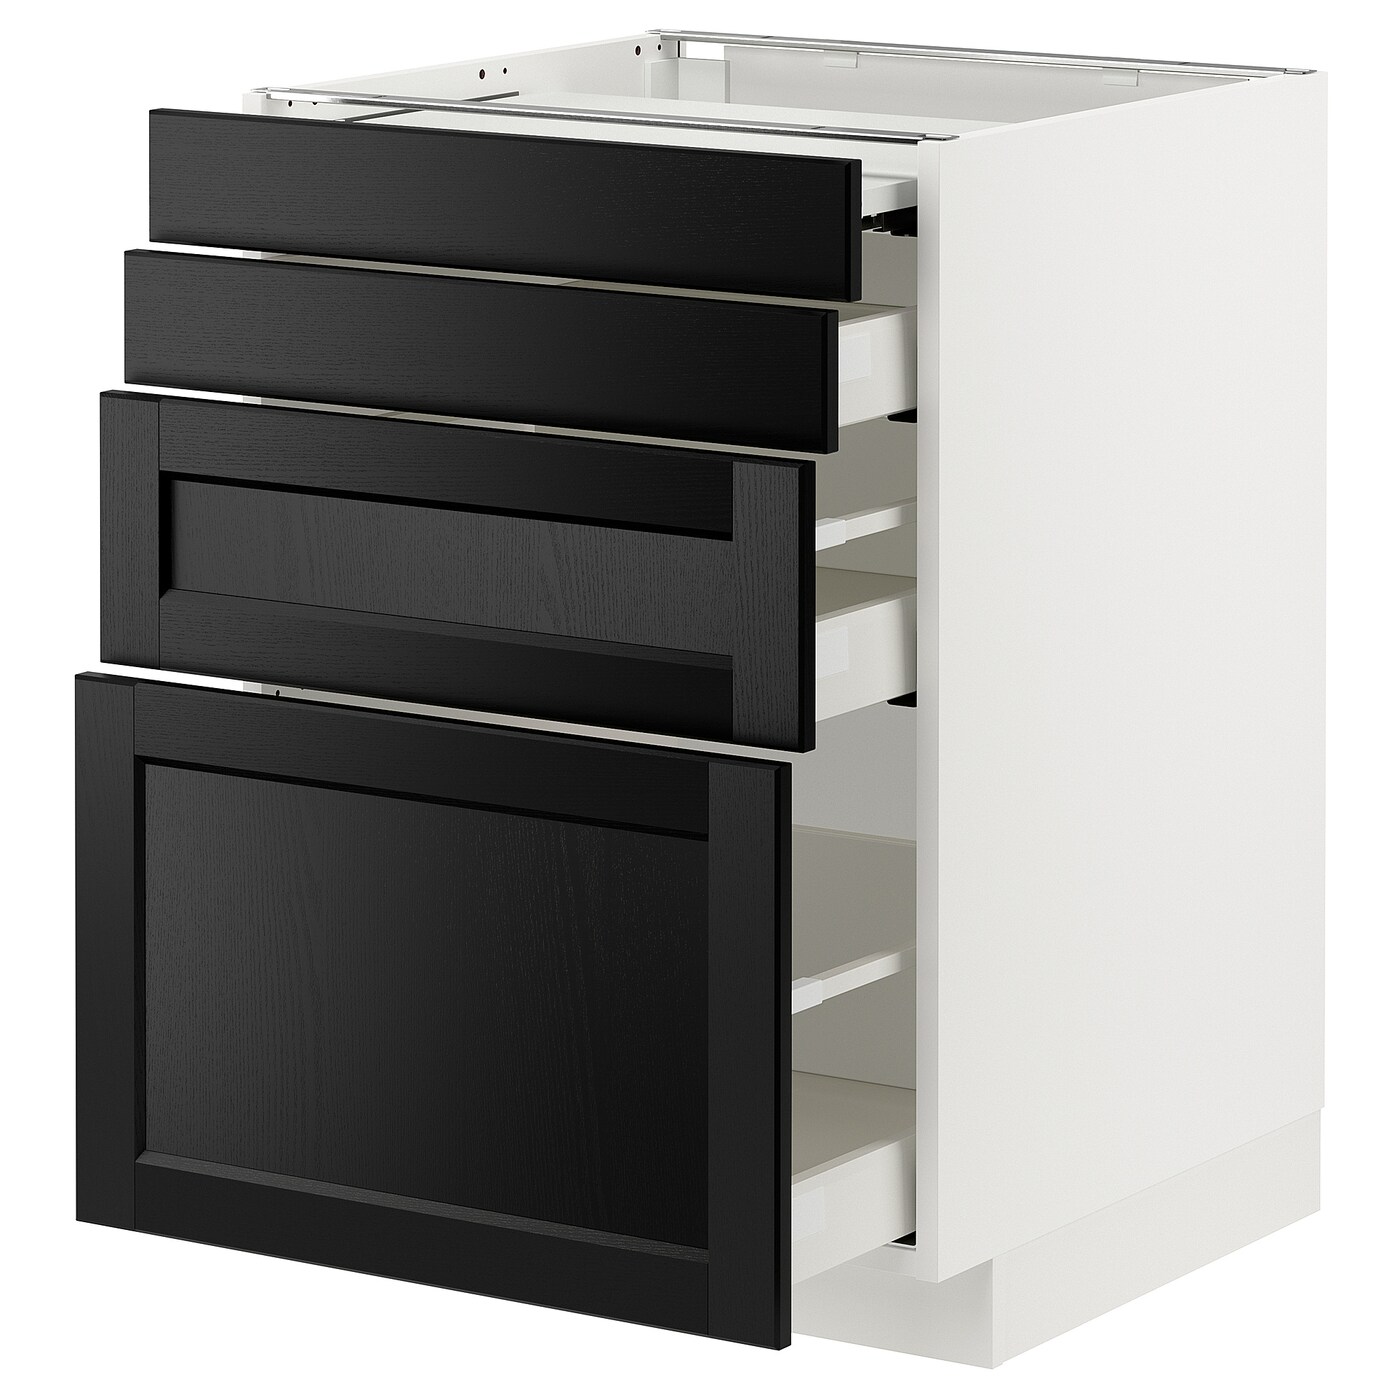 Напольный шкаф - METOD / MAXIMERA IKEA/ МЕТОД/ МАКСИМЕРА ИКЕА,  88х60 см, белый/черный